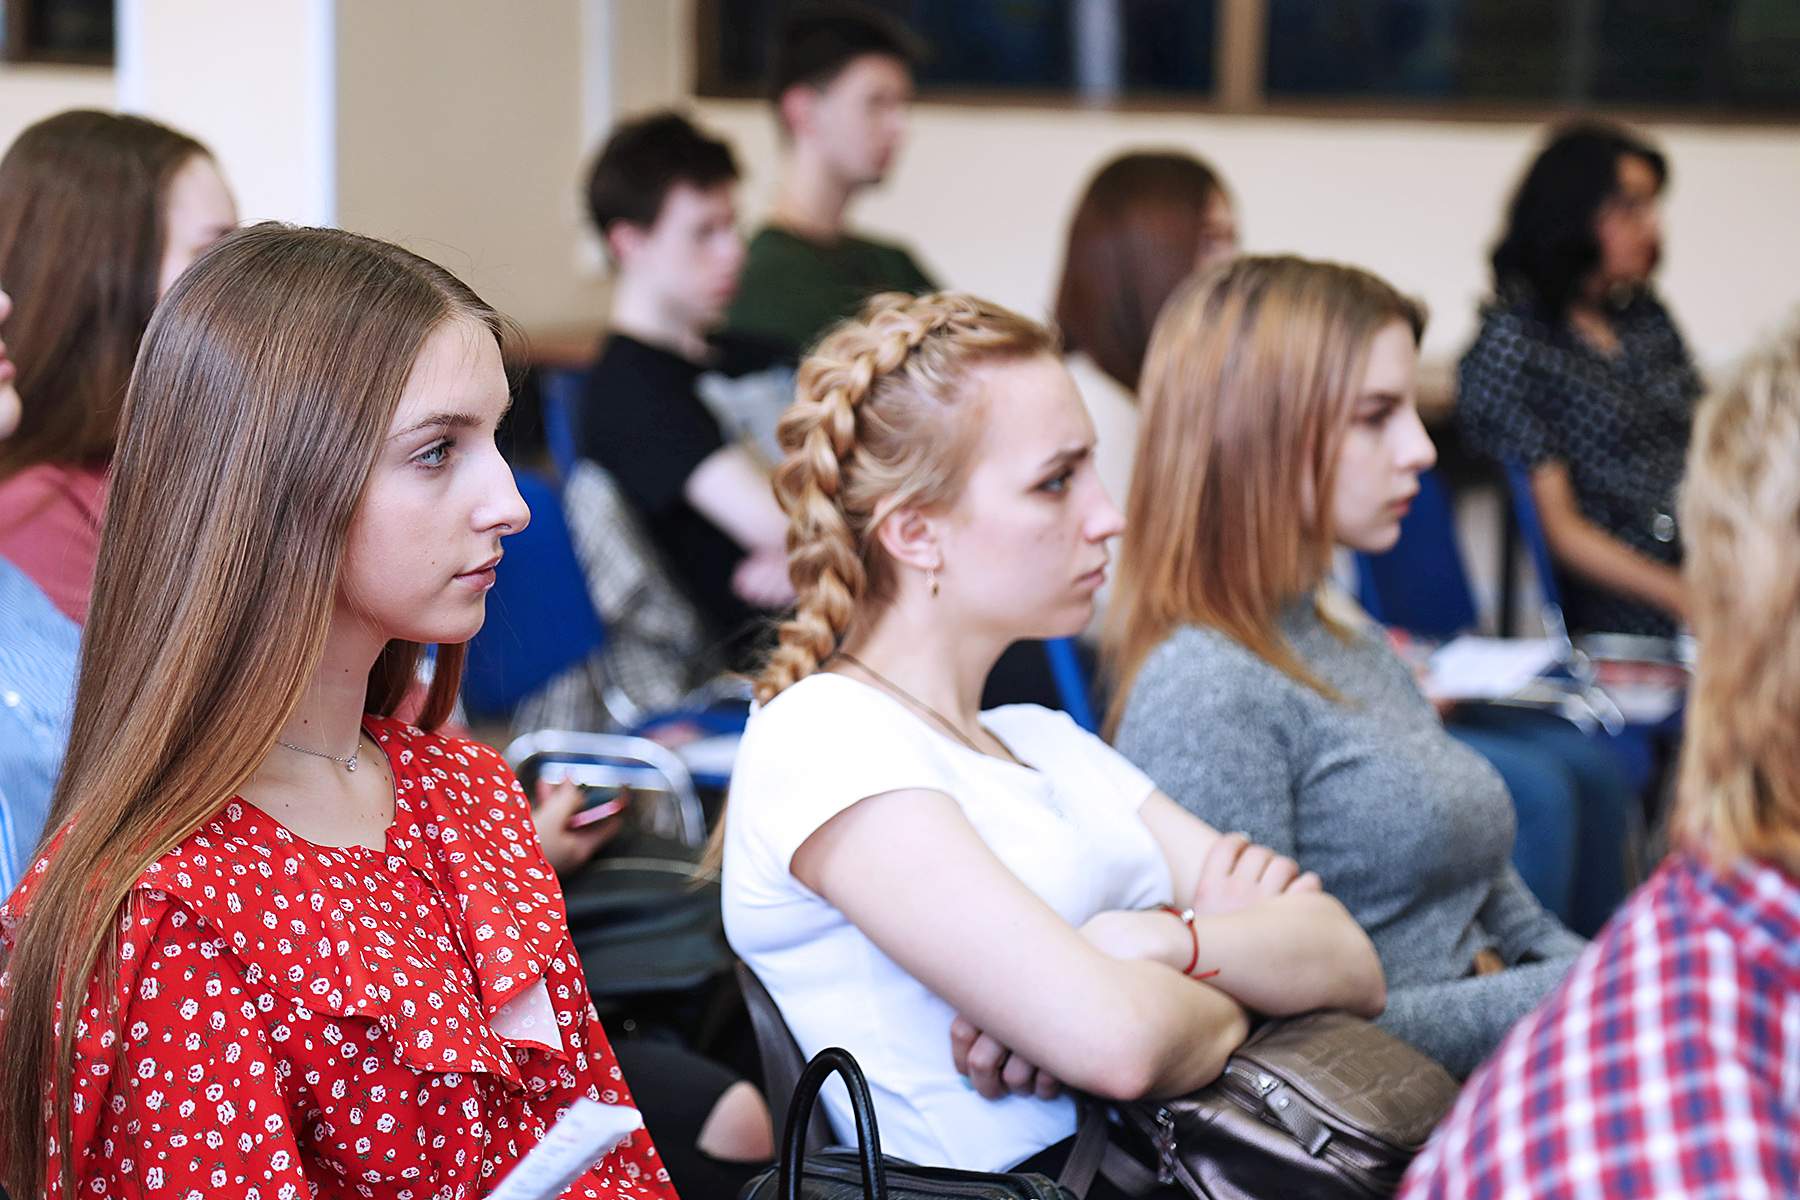 День компании «Аквадом» во ВГУЭС: вакансии и возможности для студентов и выпускников